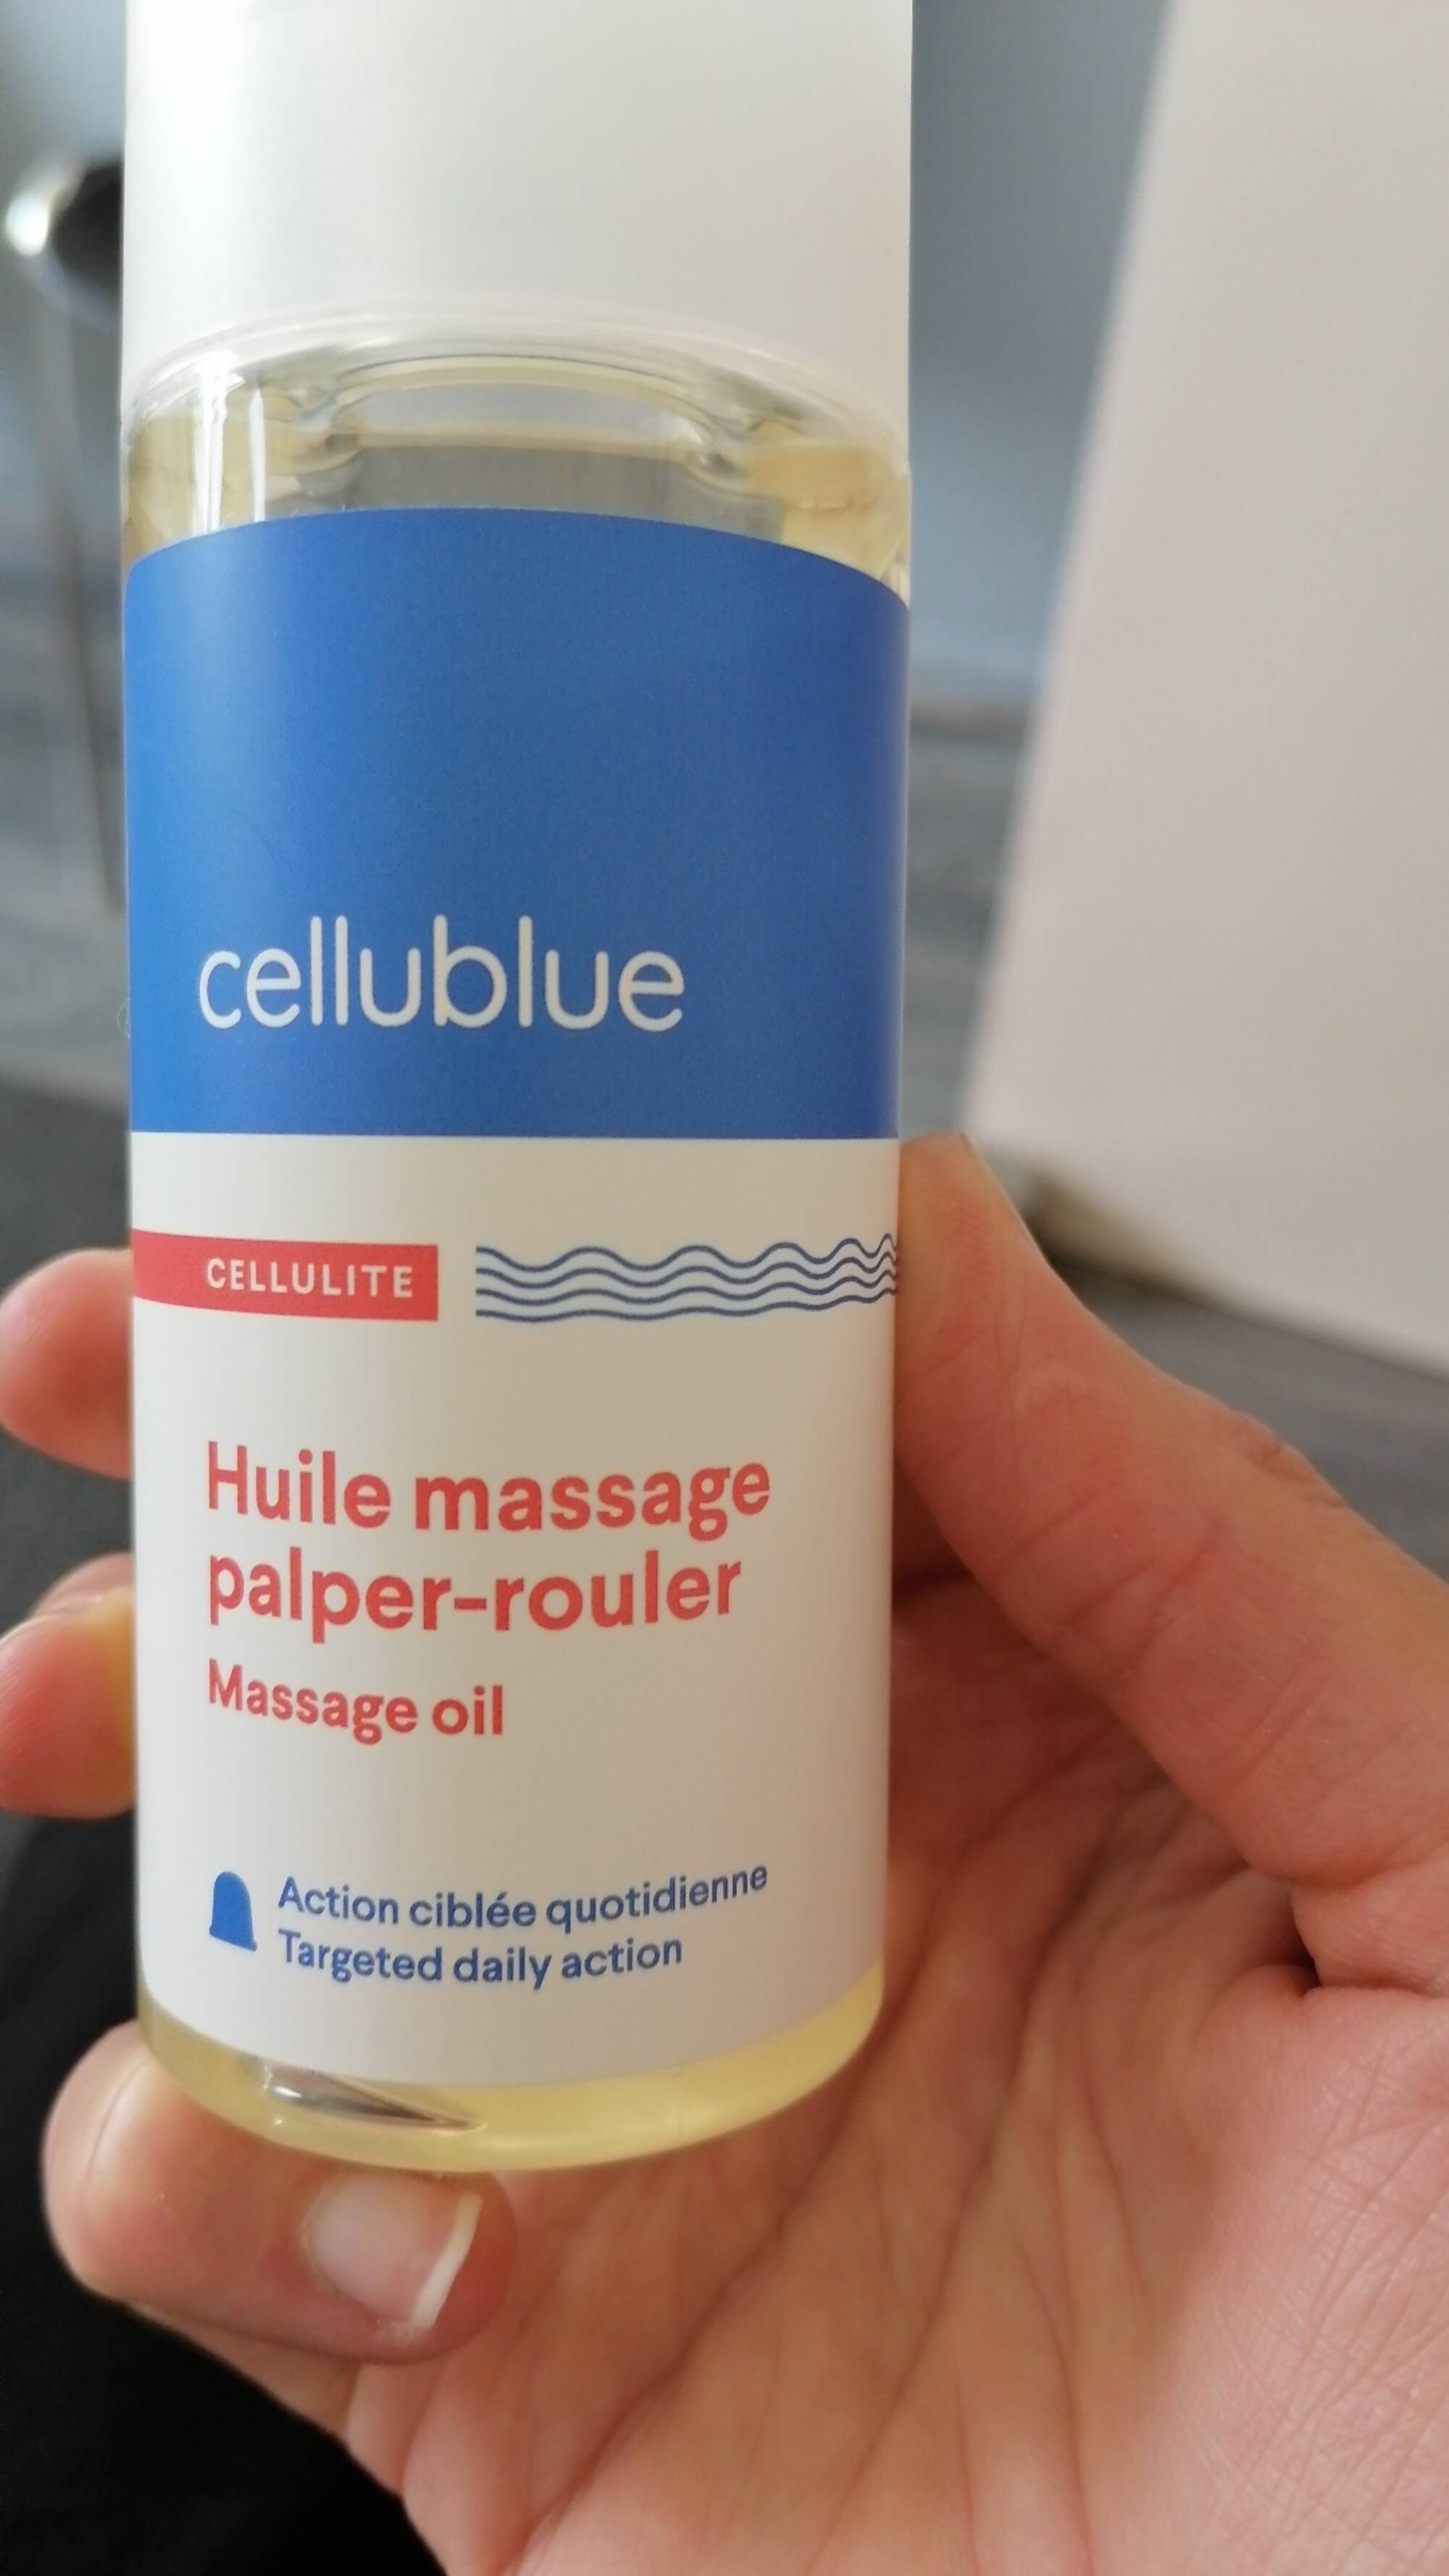 Composition CELLUBLUE Cellulite - Huile massage palper-rouler